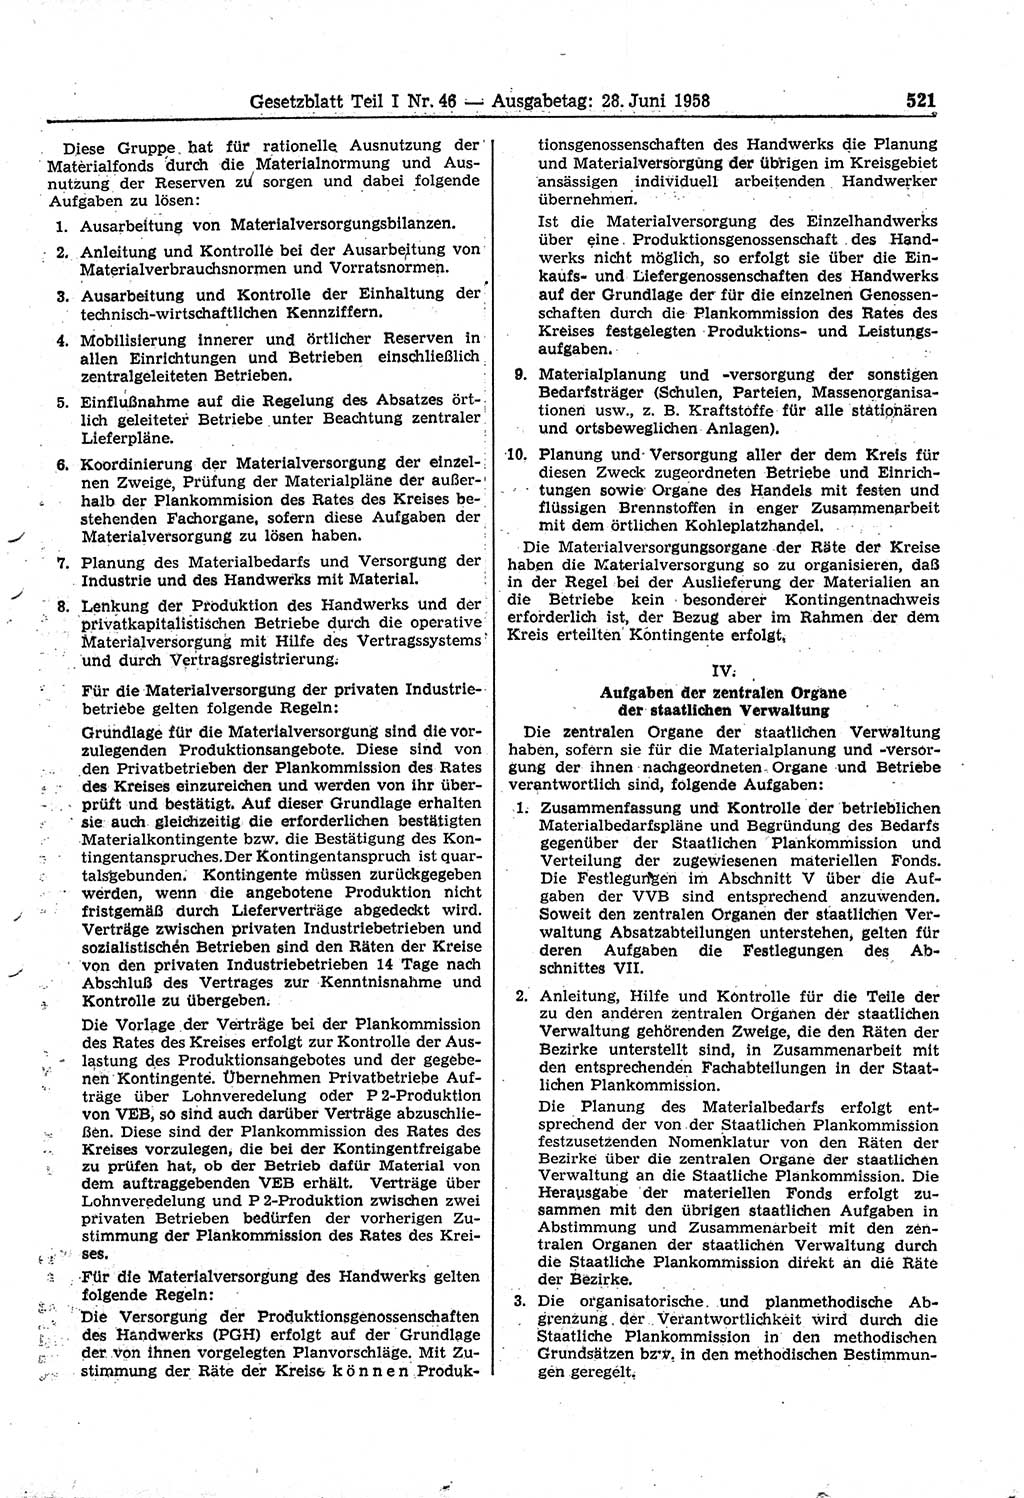 Gesetzblatt (GBl.) der Deutschen Demokratischen Republik (DDR) Teil Ⅰ 1958, Seite 521 (GBl. DDR Ⅰ 1958, S. 521)